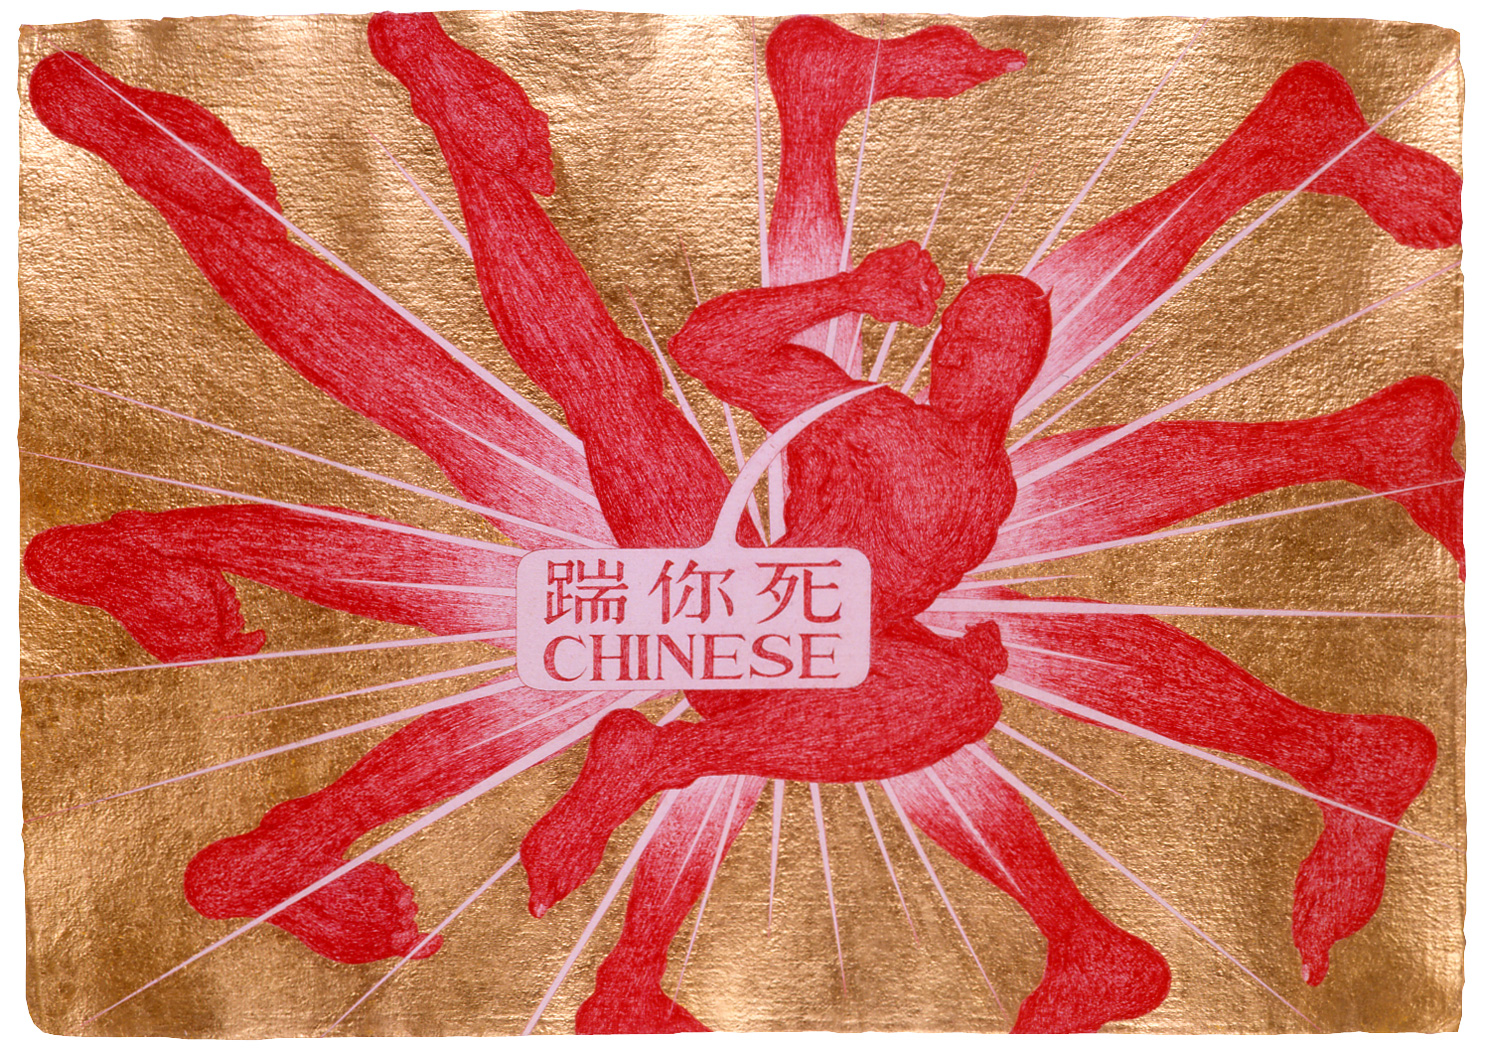 Yao Jui-Chung, "The Cynic: Chinese"